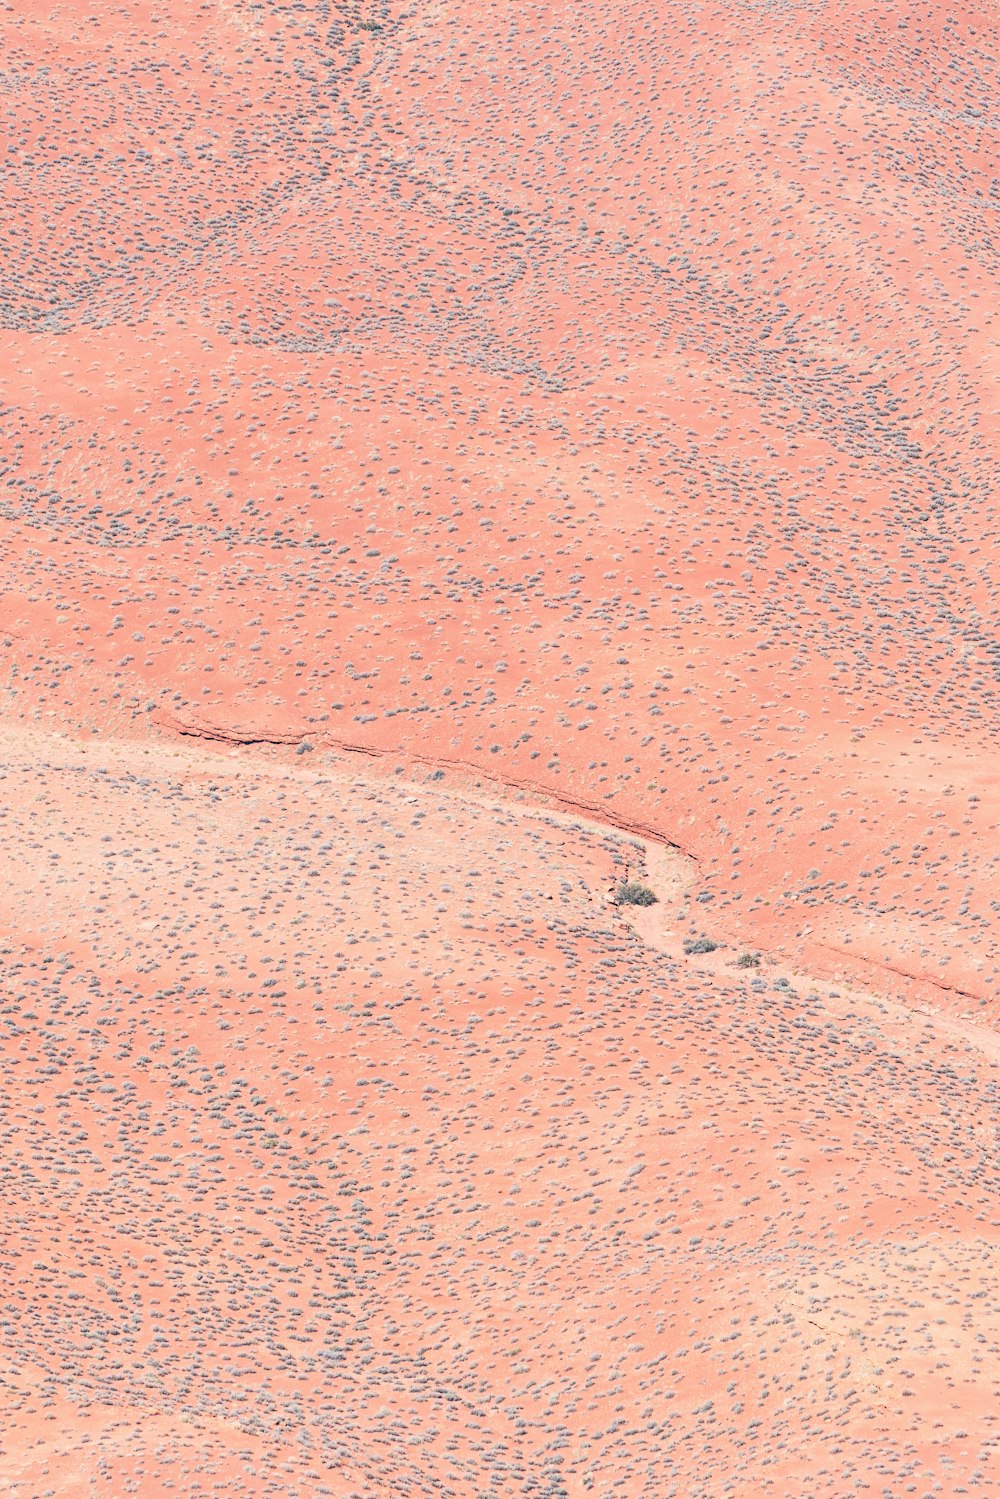 um pássaro solitário de pé no meio de um deserto